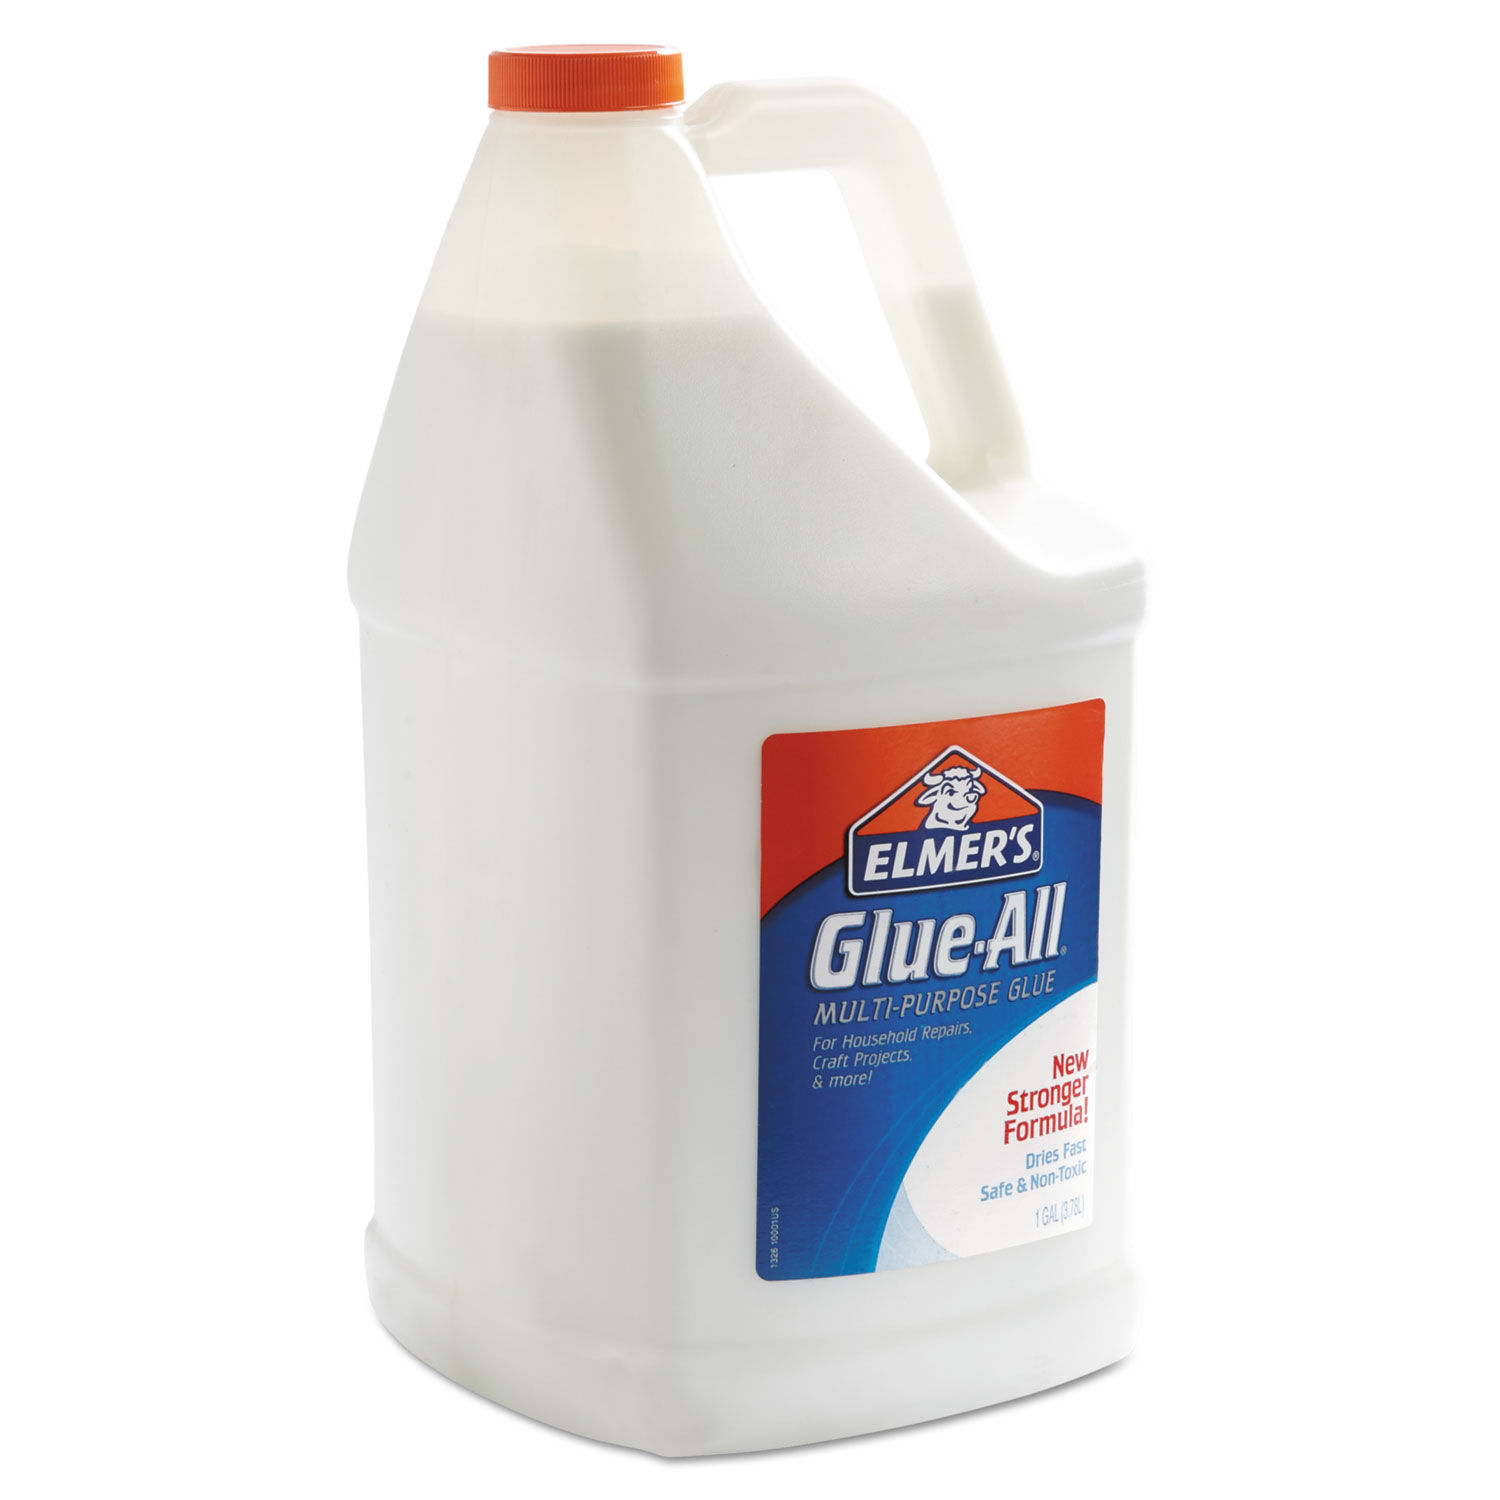 Buy Elmer's White Glue, Sobo, Aleene's, Elmer's Wood Glue & Glue Sticks